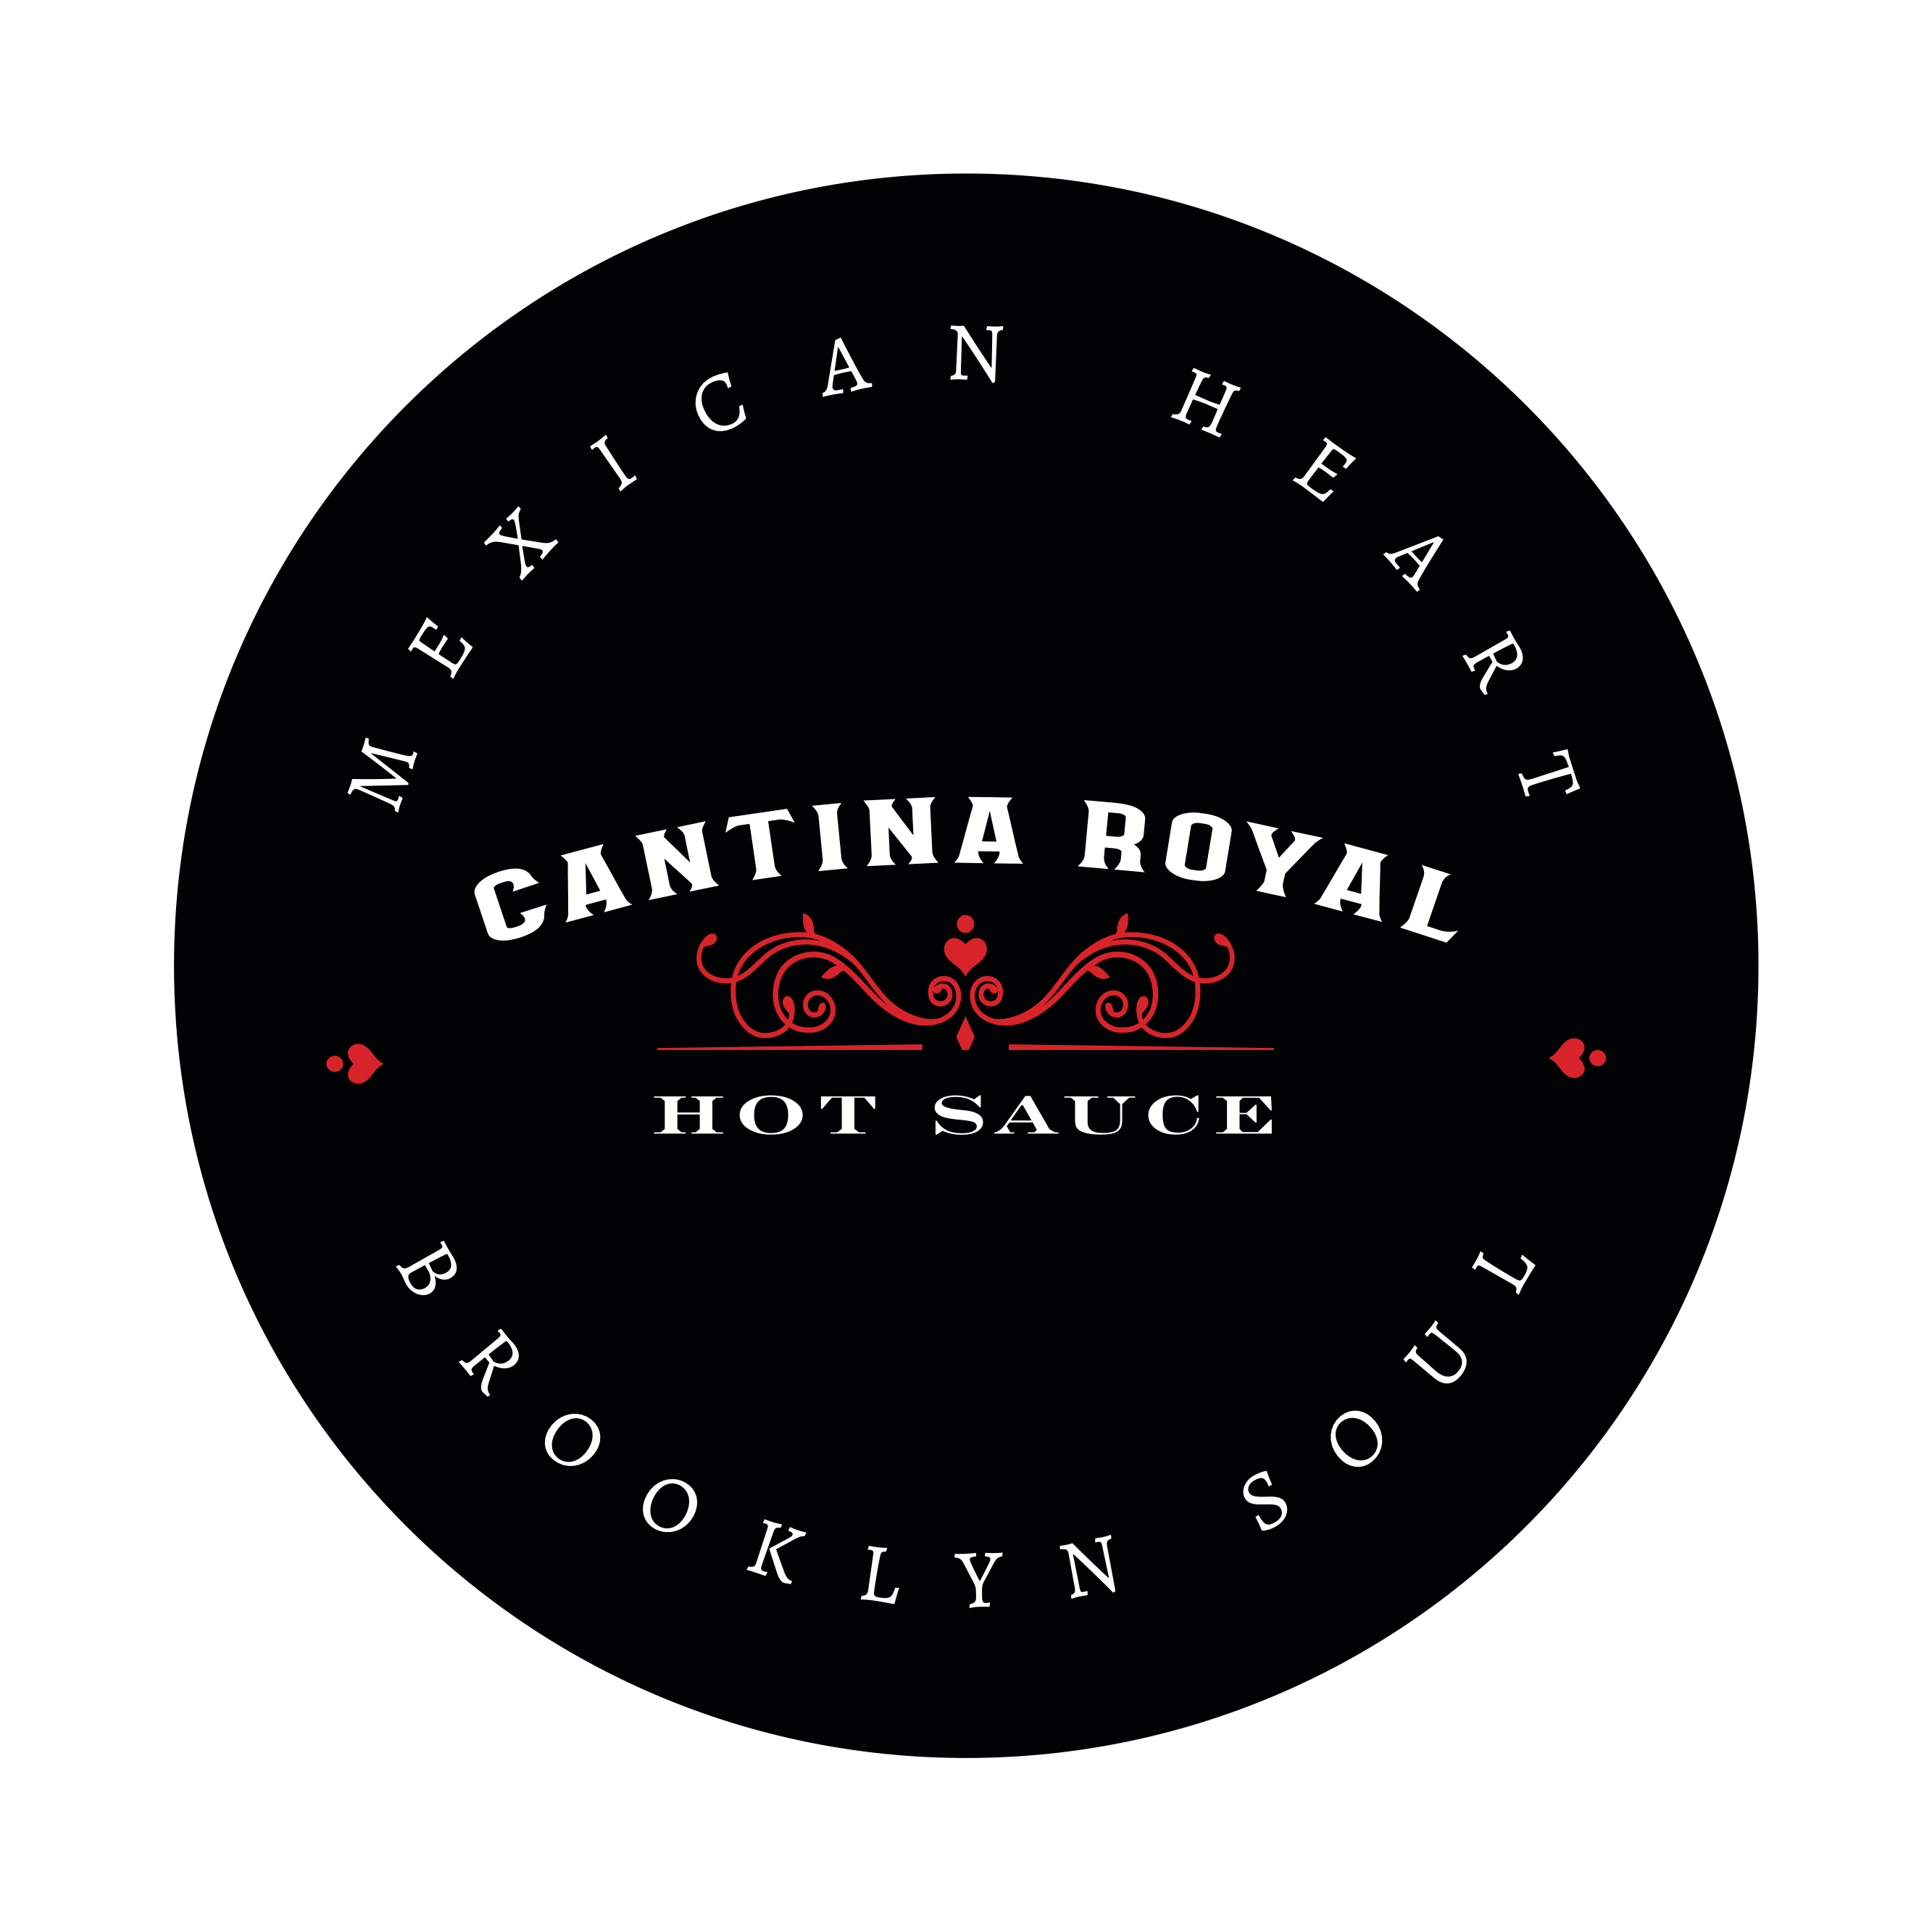 Productos al por mayor de Cantina Royal Hot Sauce